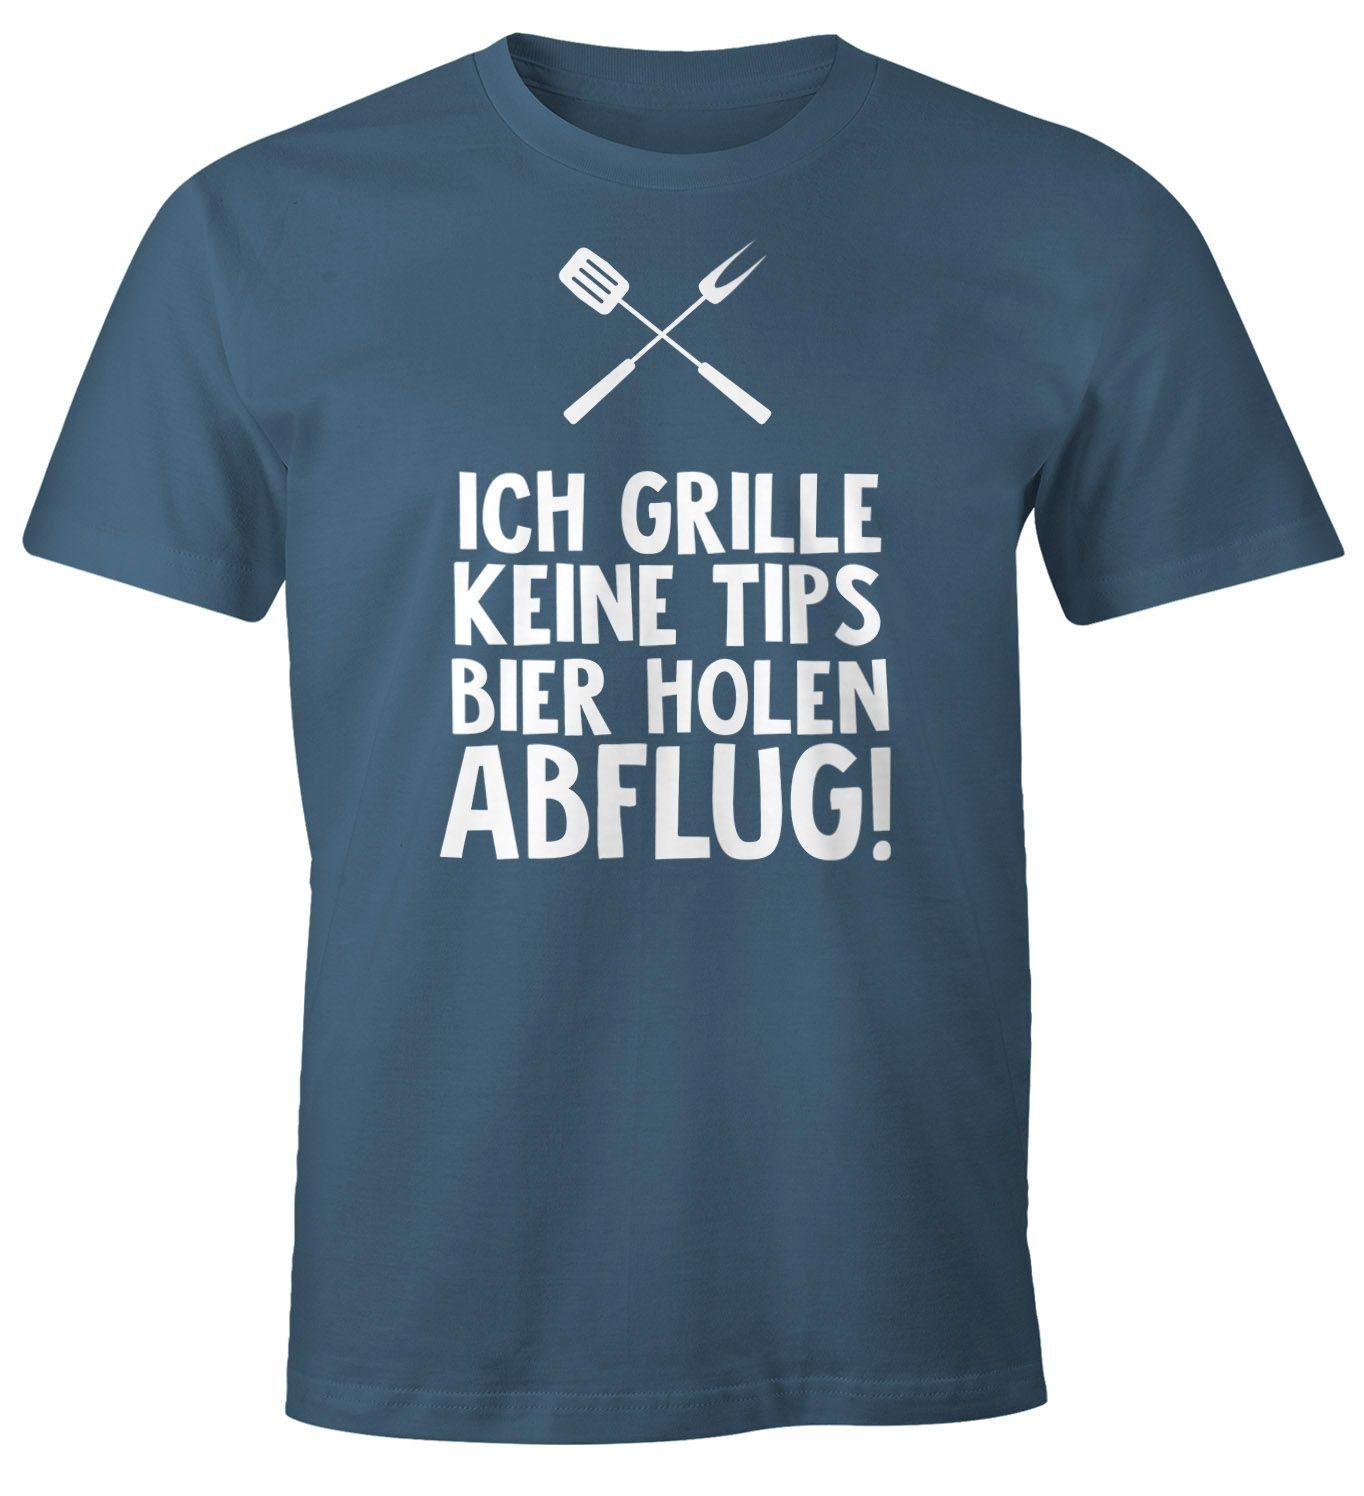 I Sprüche I Lustig I Fun I  bis 5XL Herren T-Shirt Ich heirate.. 